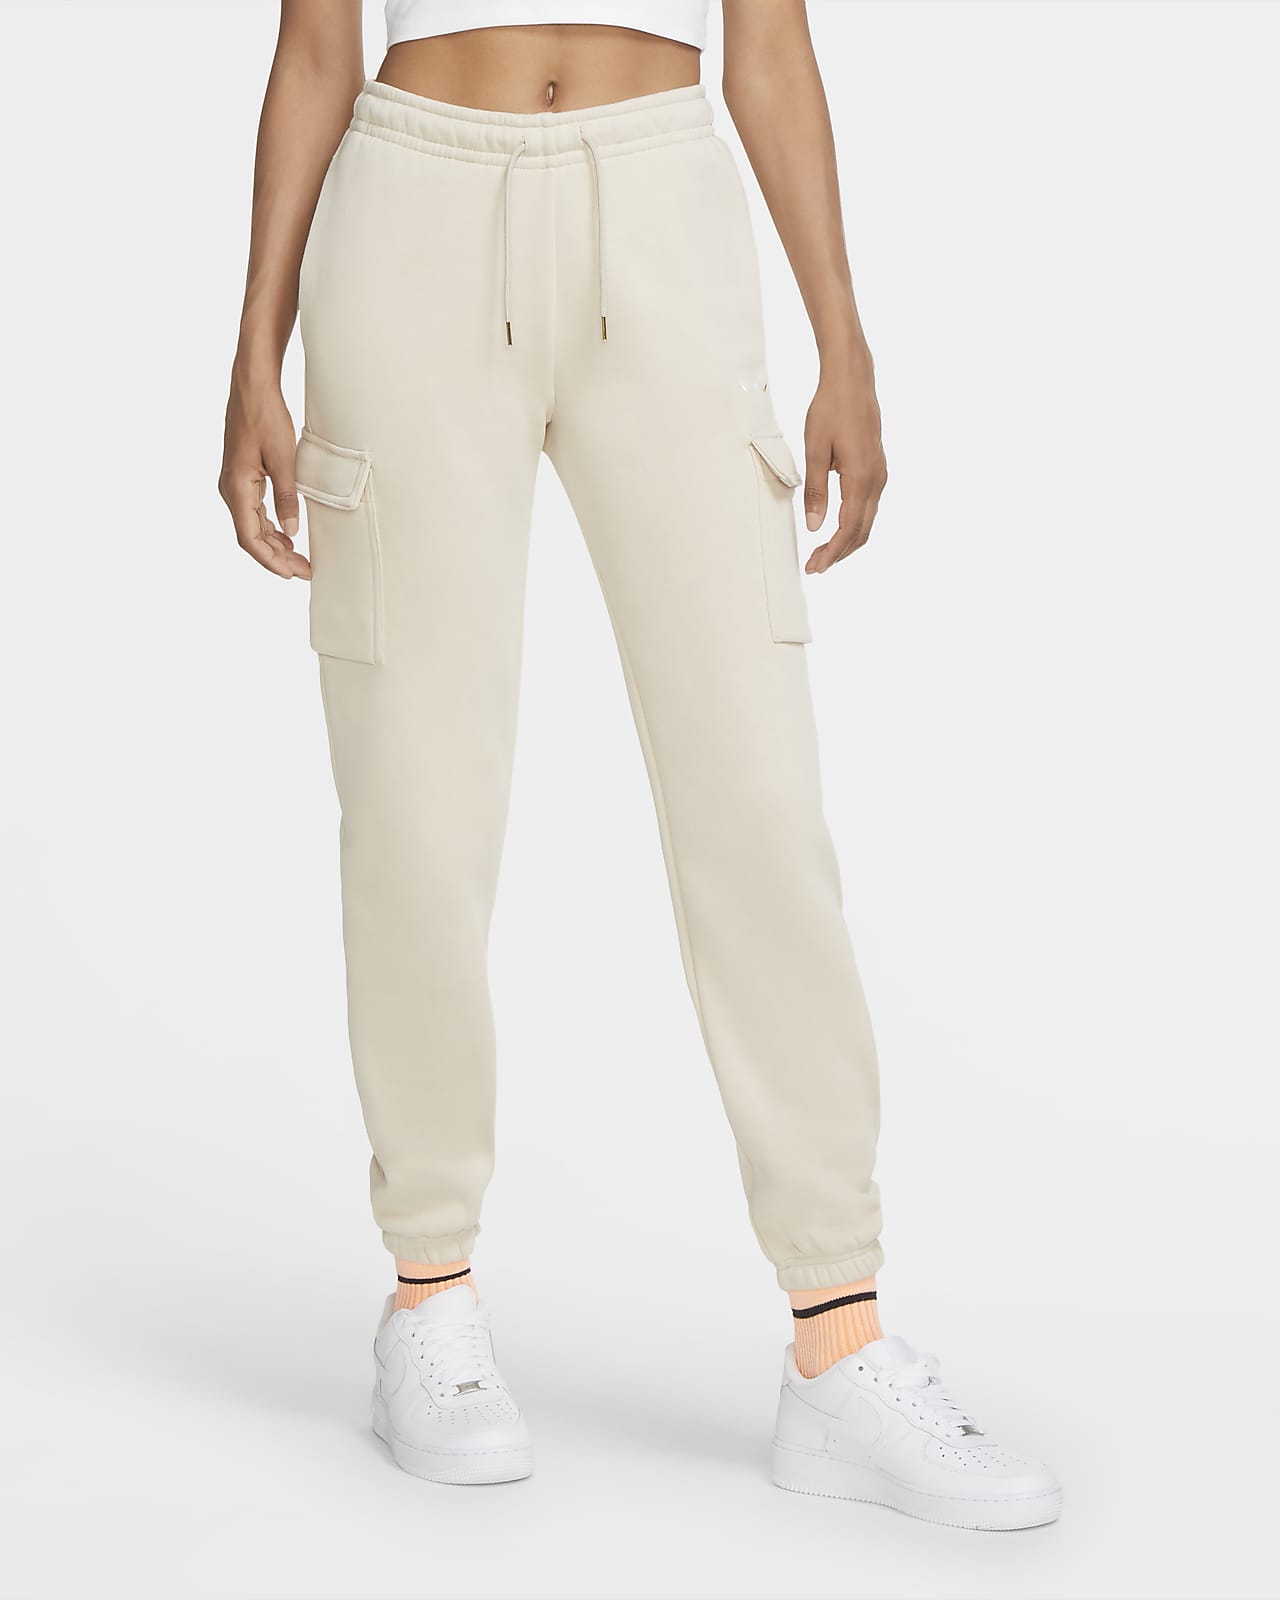 Nike Sportswear Women's Loose-Fit Fleece Cargo Trousers. Nike LU